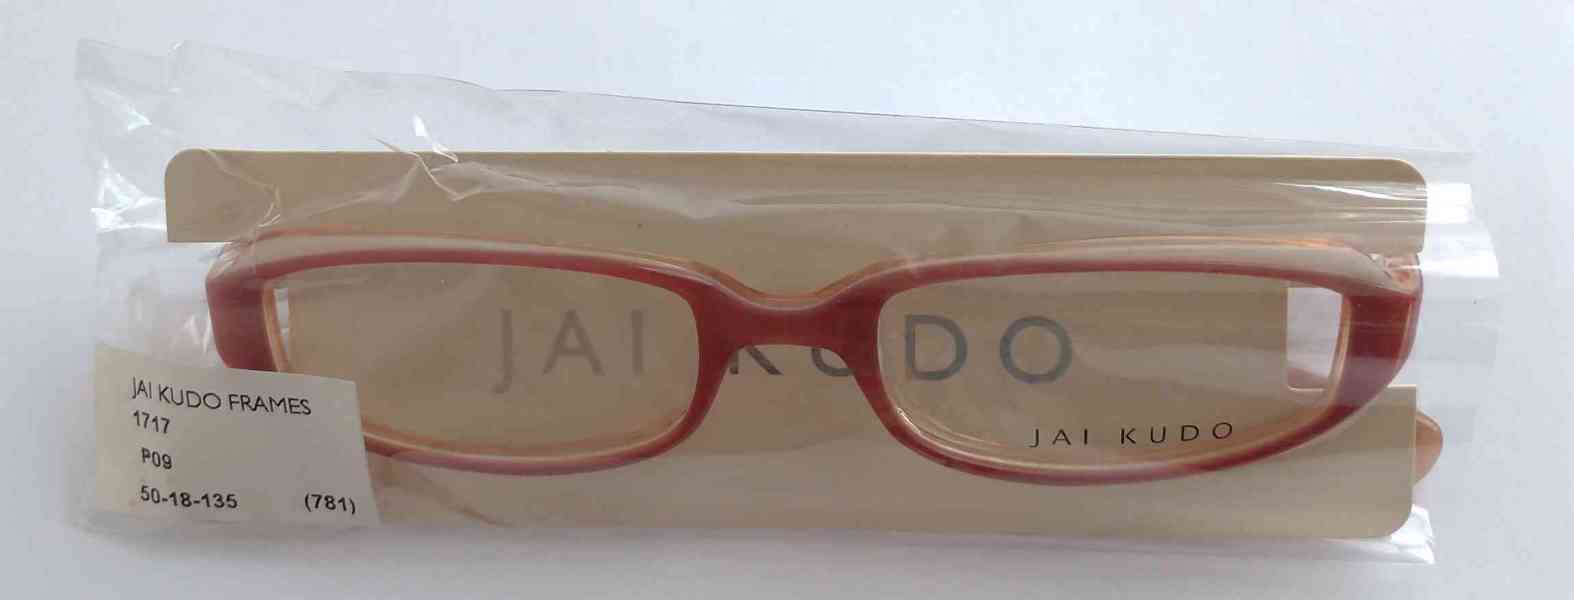 JAI KUDO 1717 P09 dámské brýlové obruby 50-18-135 MOC:2600Kč - foto 2